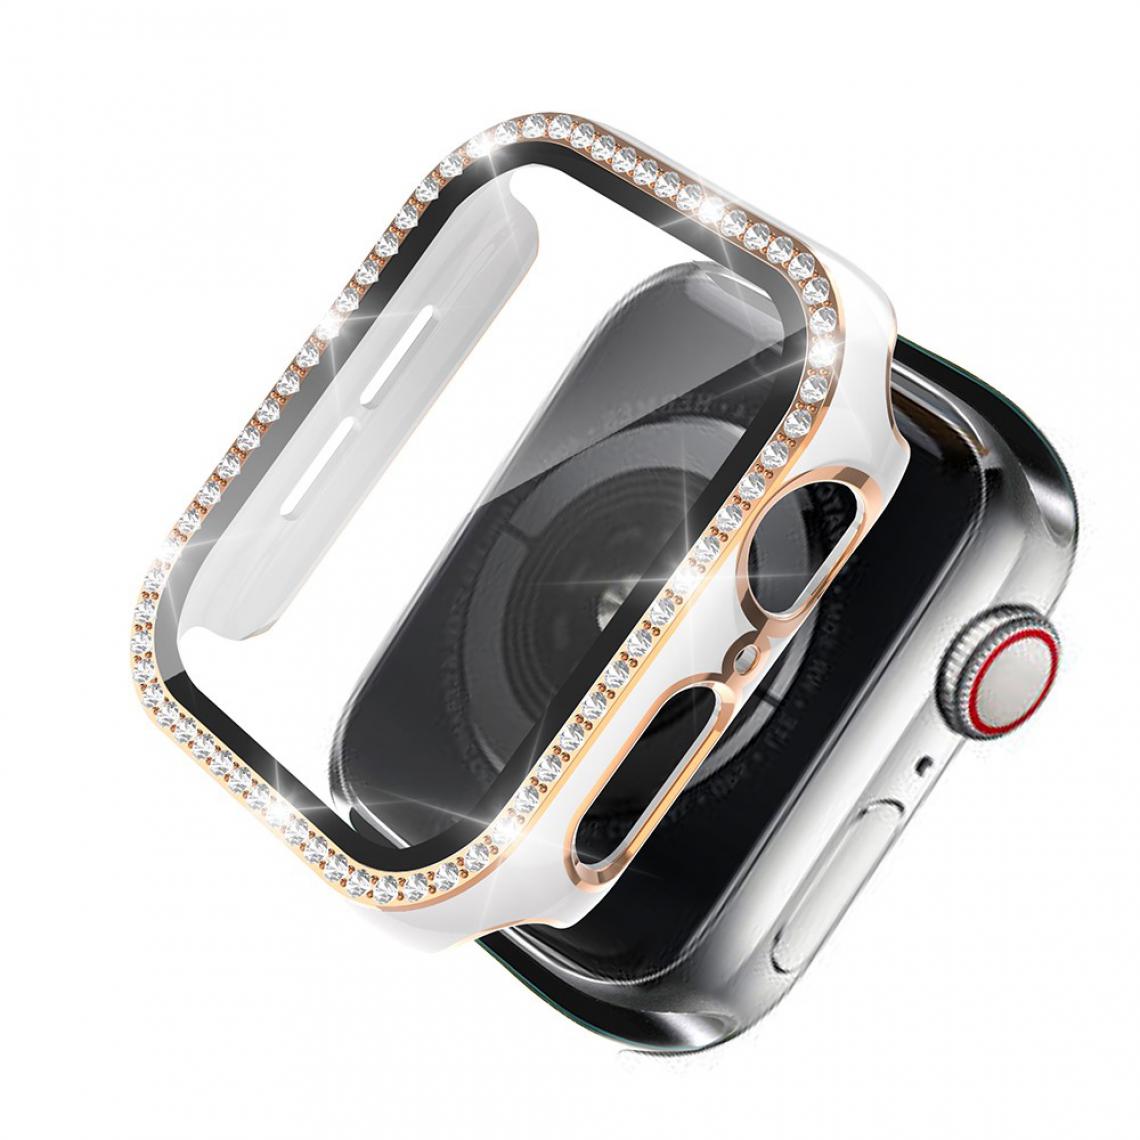 Other - Coque en TPU Strass en cristal de galvanoplastie bicolore Blanc/Or pour votre Apple Watch 1/2/3 42mm - Accessoires bracelet connecté